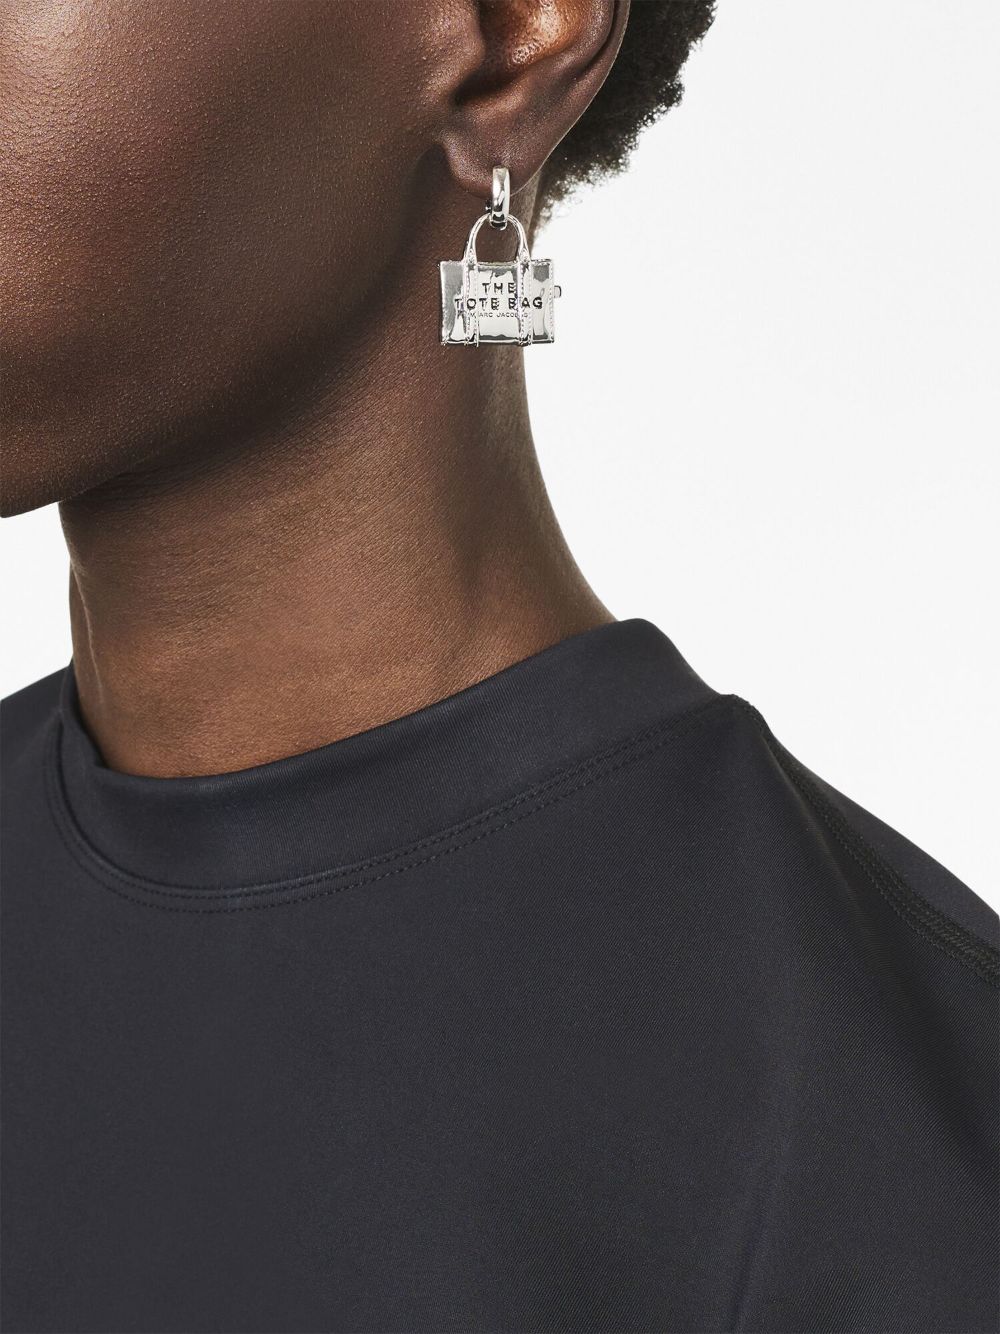 Marc by Marc Jacobs Zipper Pull Earrings in silver